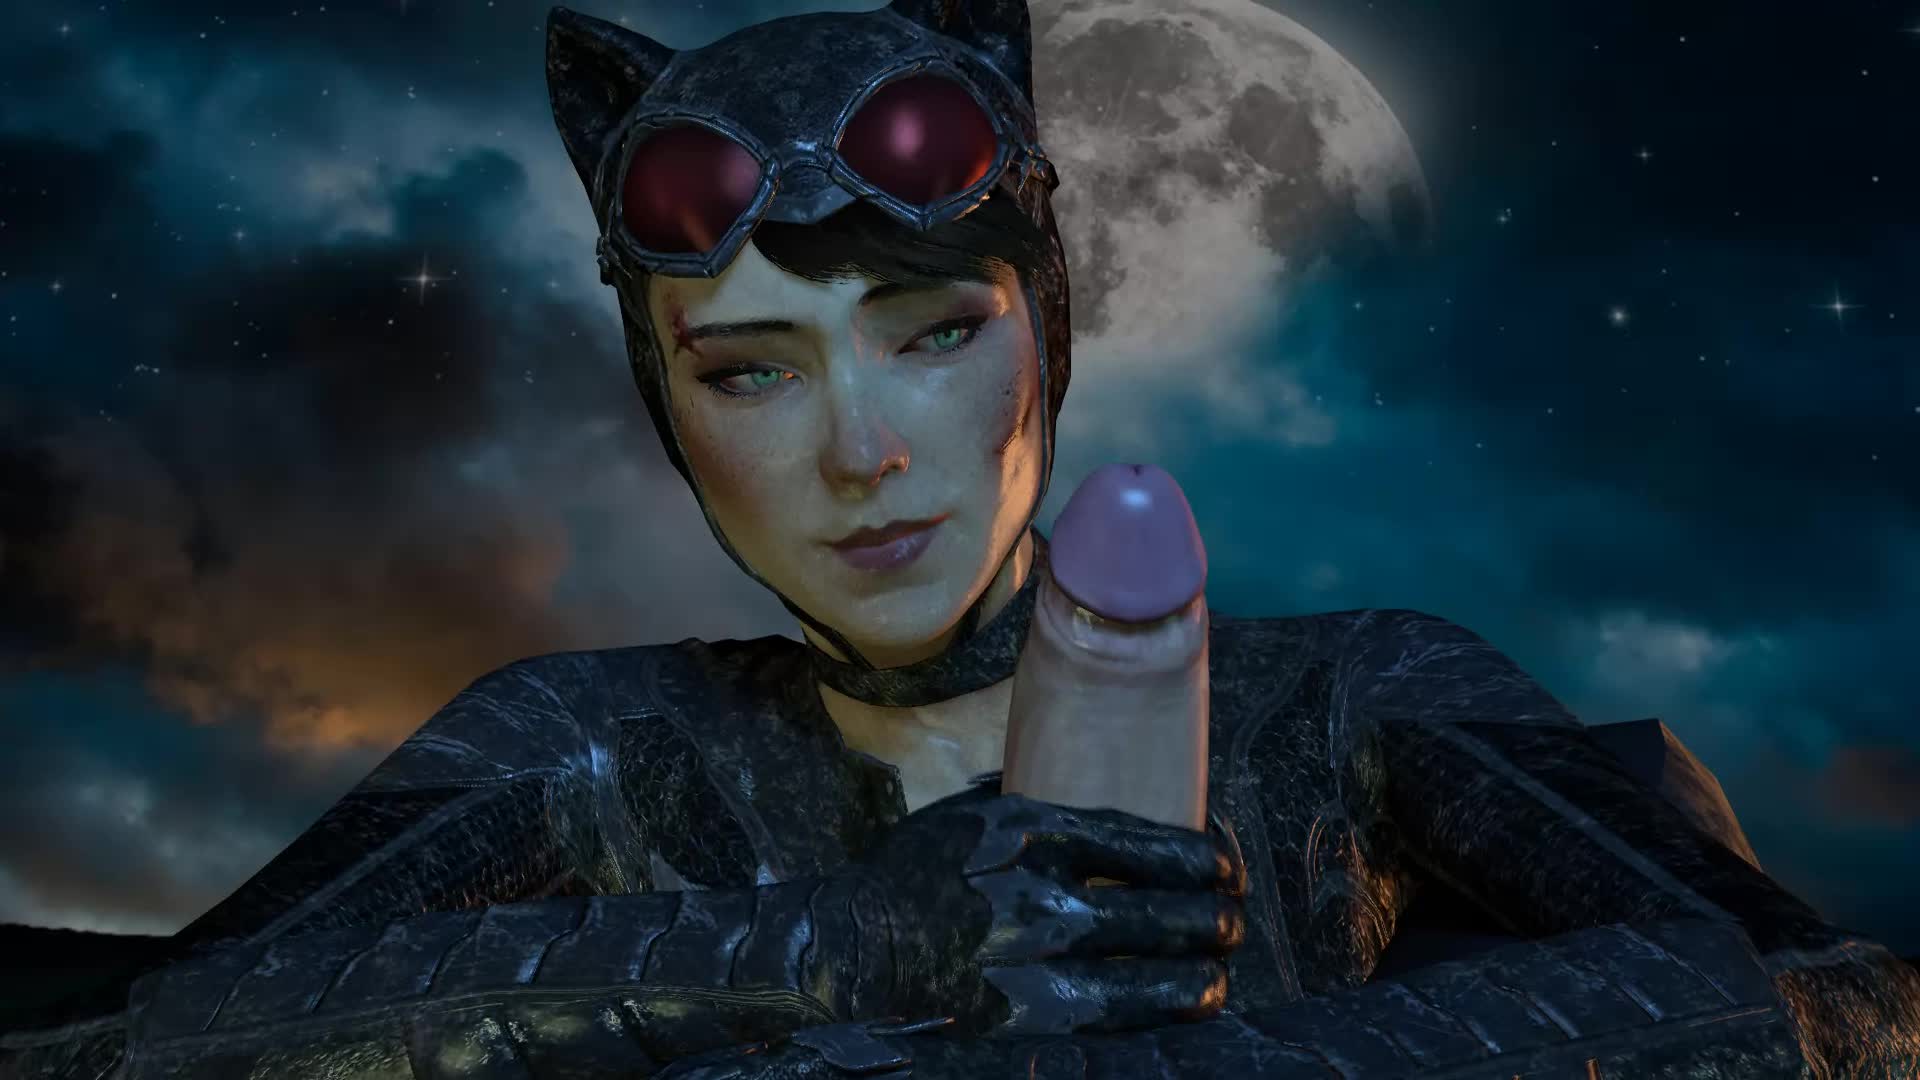 Женщина кошка оголила сиськи  для Бэтмена  15 фото эротики